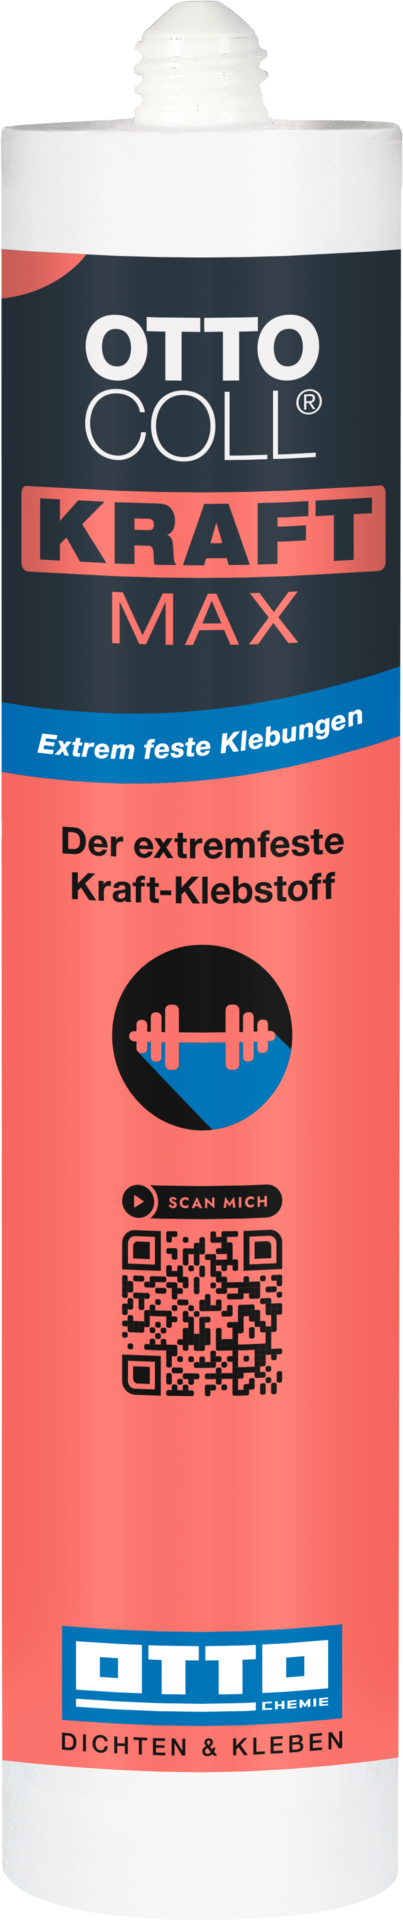 OTTOCOLL KRAFTMAX - Der Extremfeste